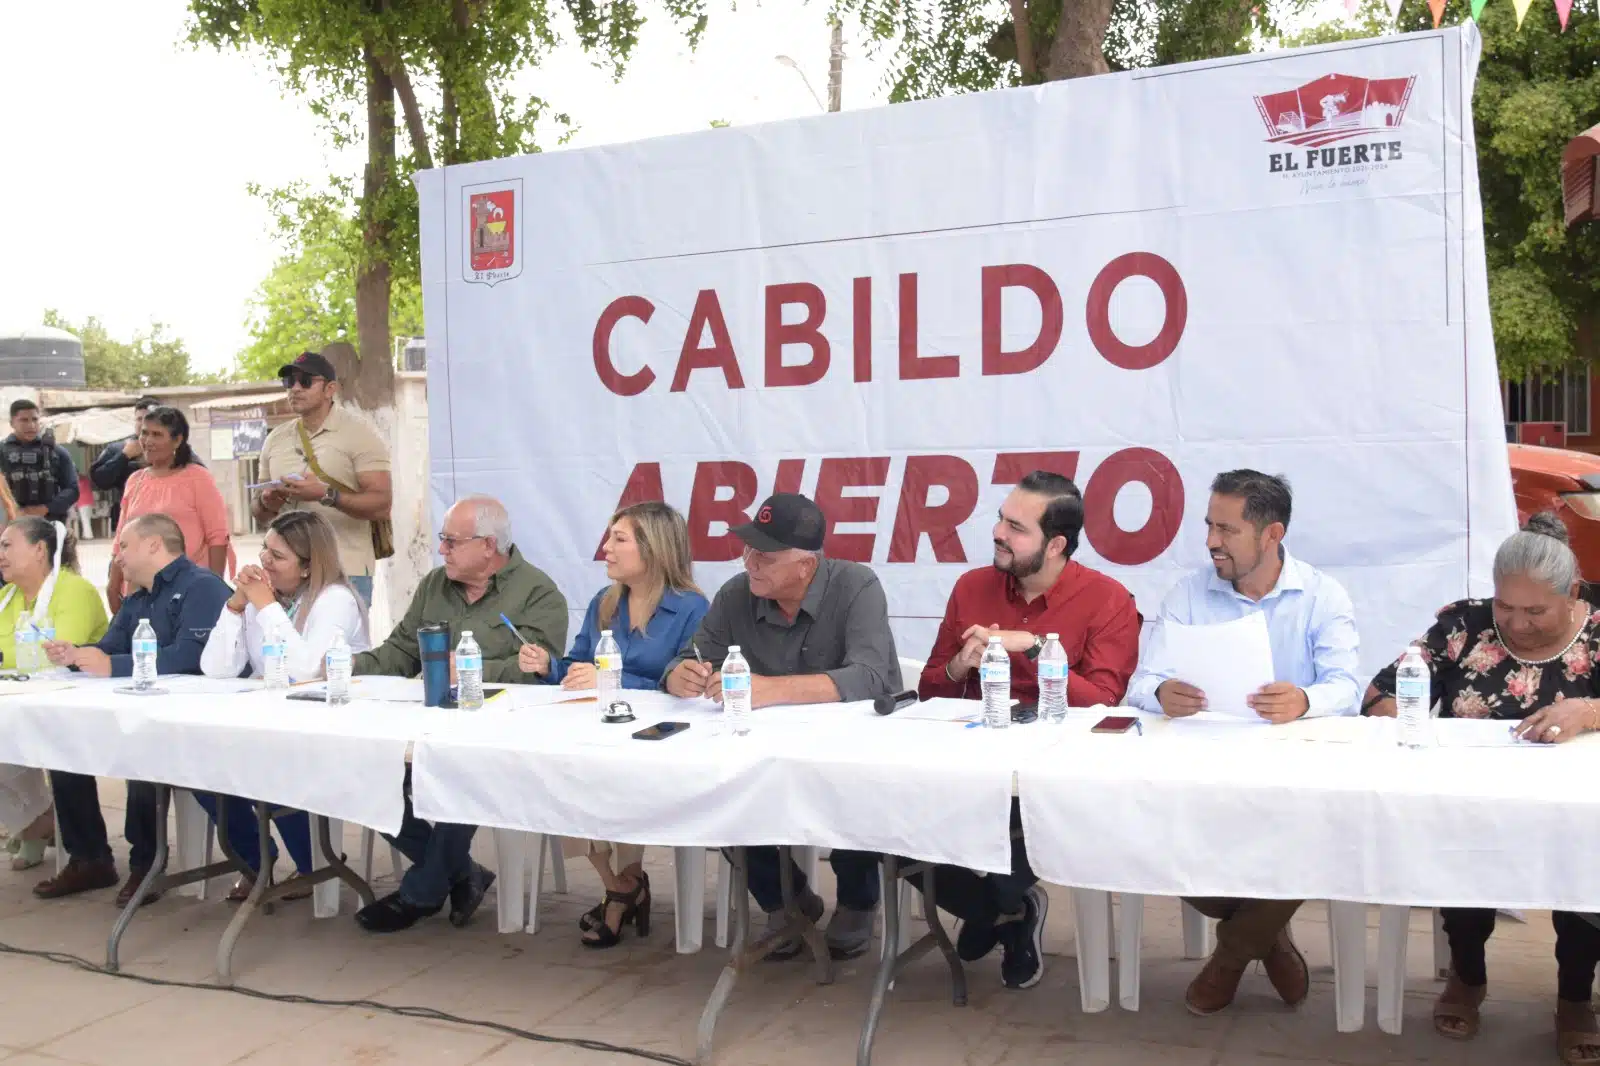 Funcionarios municipales y el alcalde de El Fuerte sentados en una mesa con mantel blanco y detrás de ellos el anuncio del programa conocido como Cabildo Abierto q